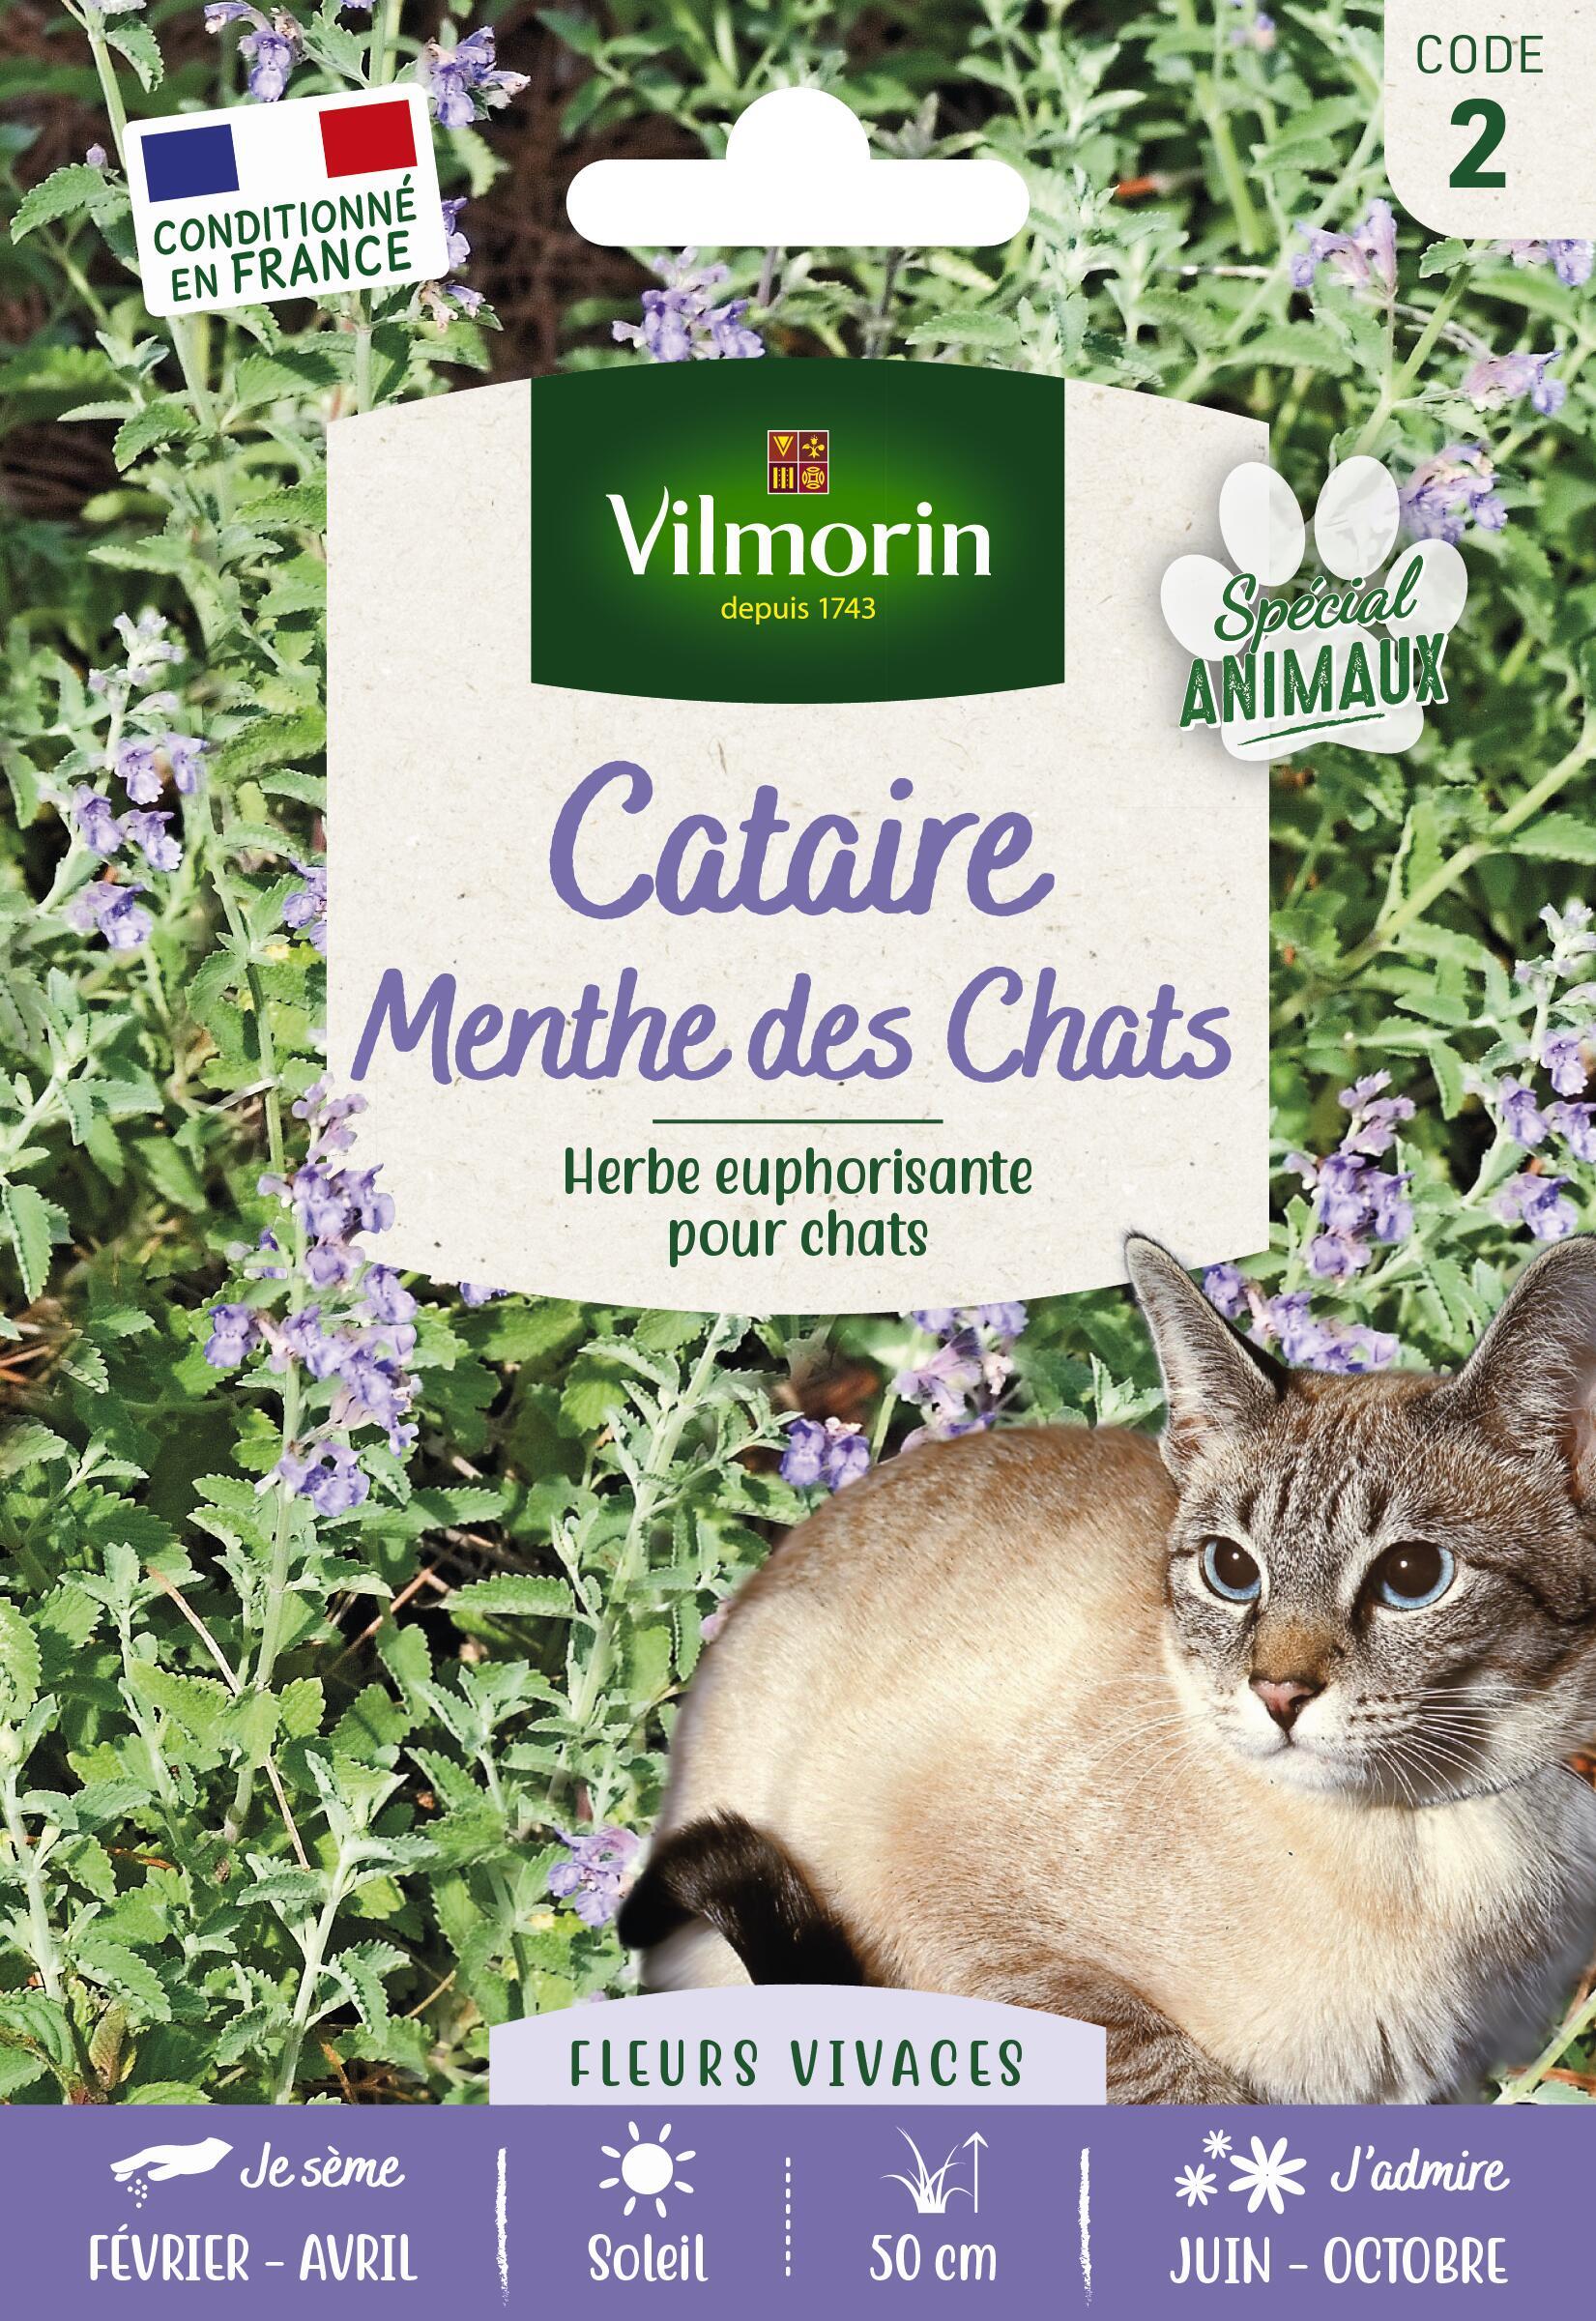 Distributeur de cataire : herbe aux chats euphorisante